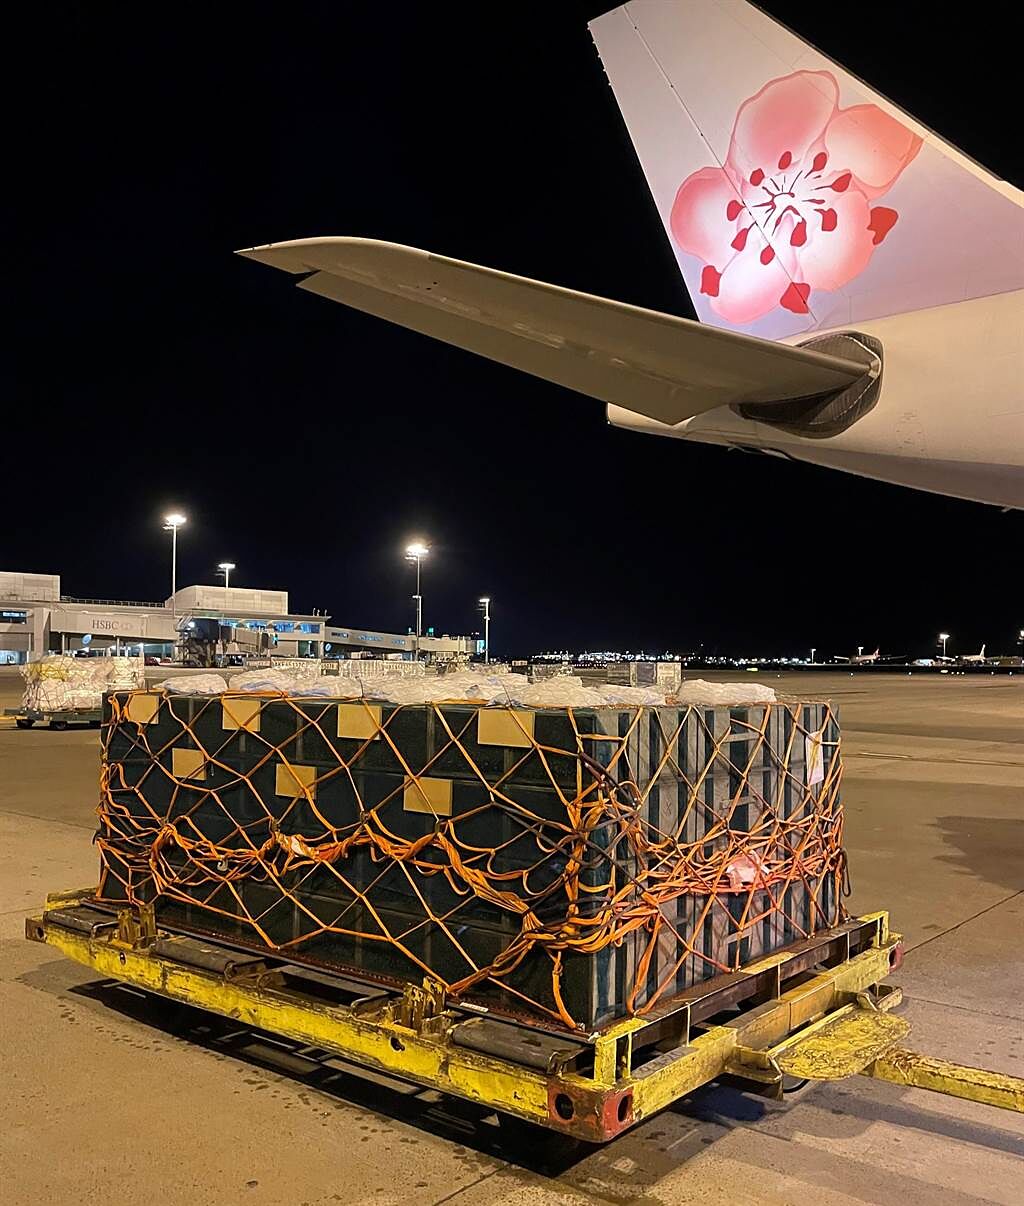 華航近日承接了特殊貨運任務載送活體蜜蜂從南半球飛北半球。(華航提供)